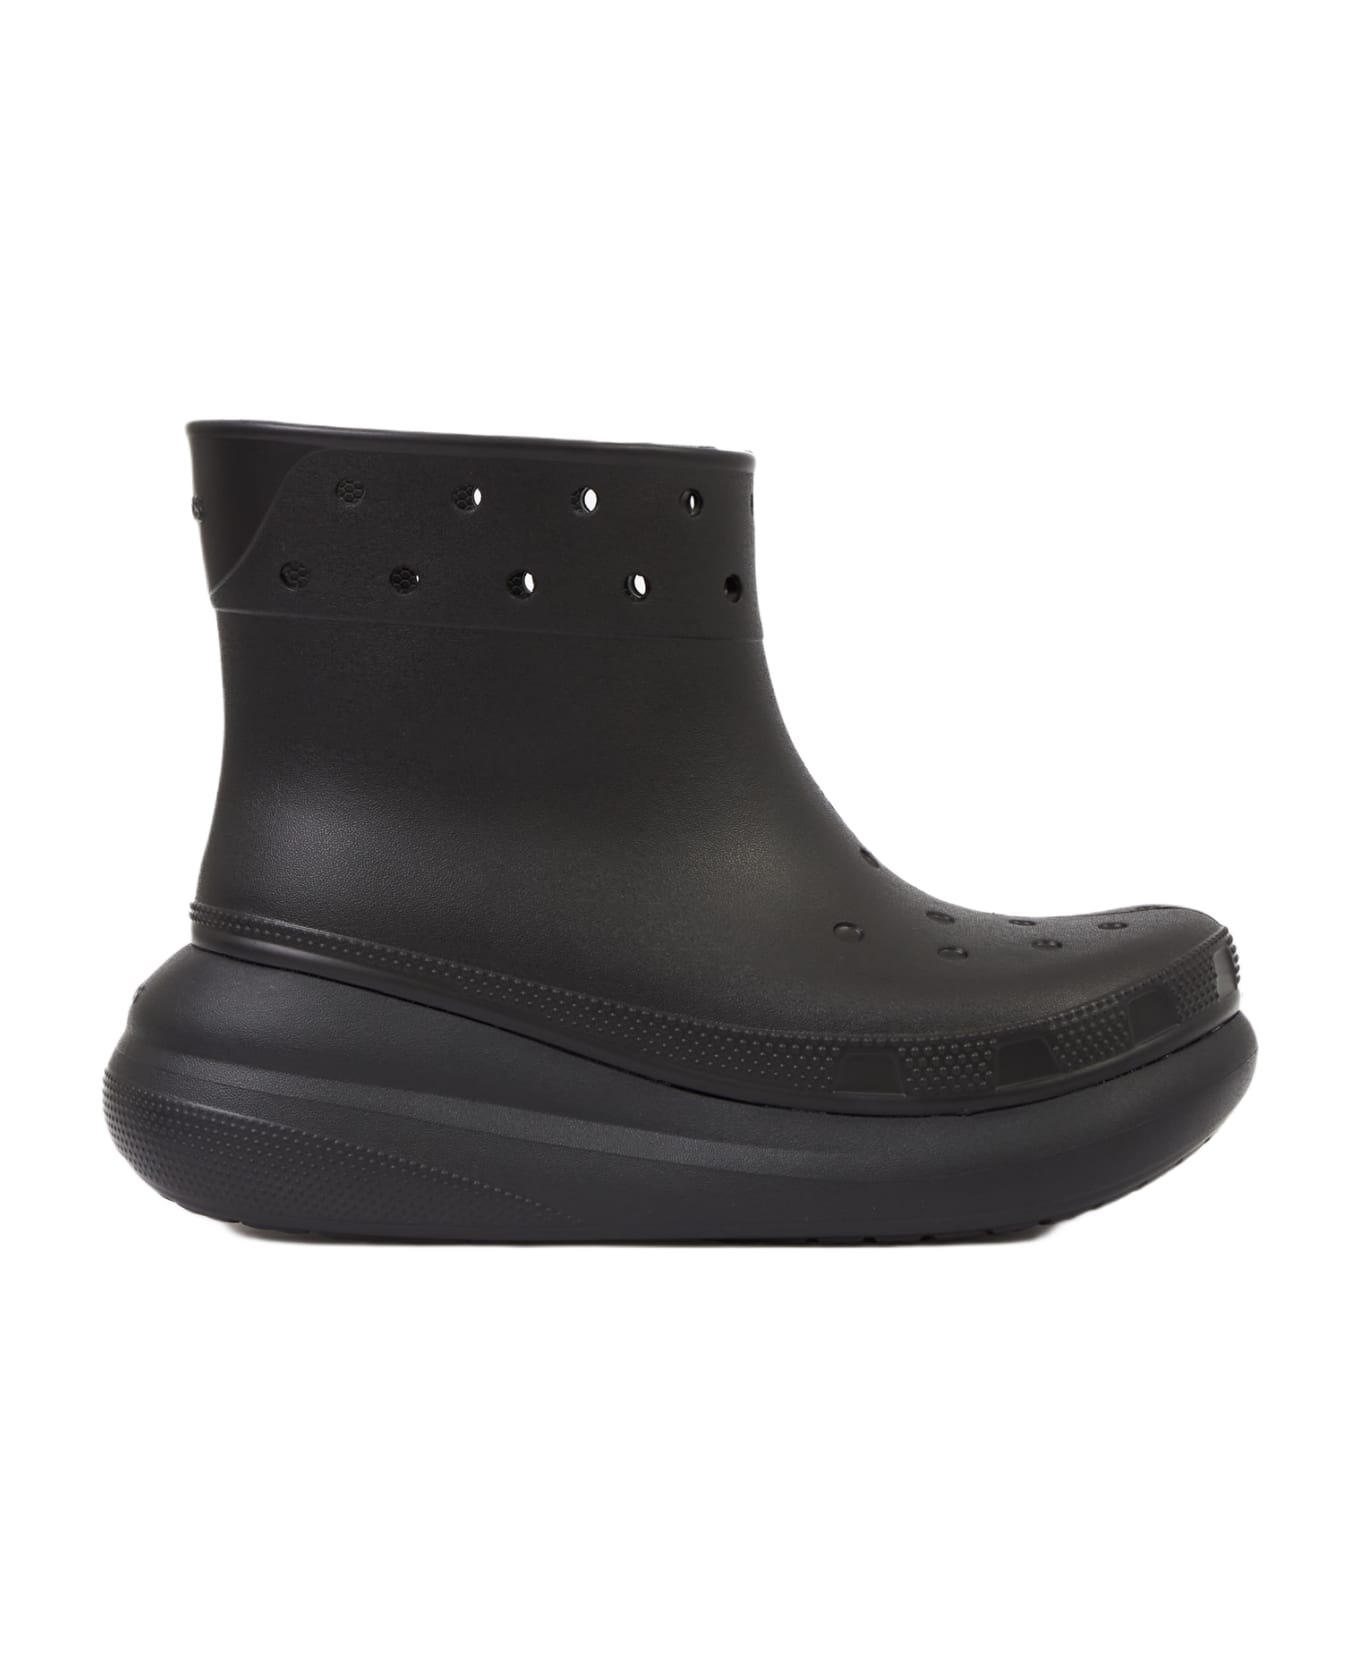 Crocs Crush Rain Boot Boots - black ブーツ